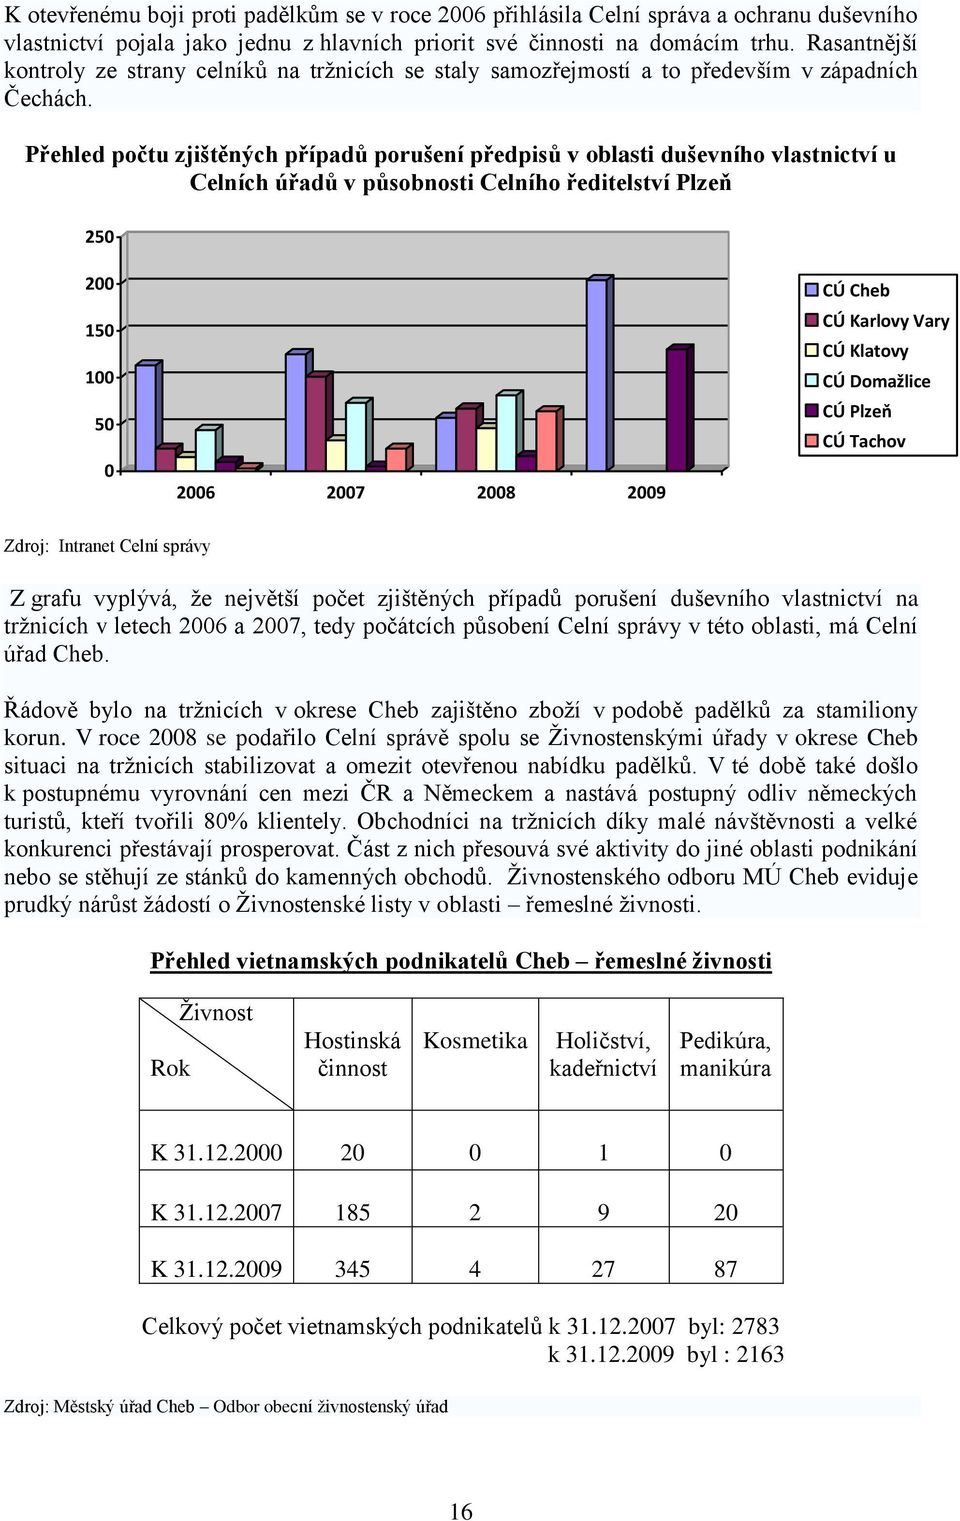 Přehled počtu zjištěných případů porušení předpisů v oblasti duševního vlastnictví u Celních úřadů v působnosti Celního ředitelství Plzeň 250 200 150 100 50 0 2006 2007 2008 2009 CÚ Cheb CÚ Karlovy